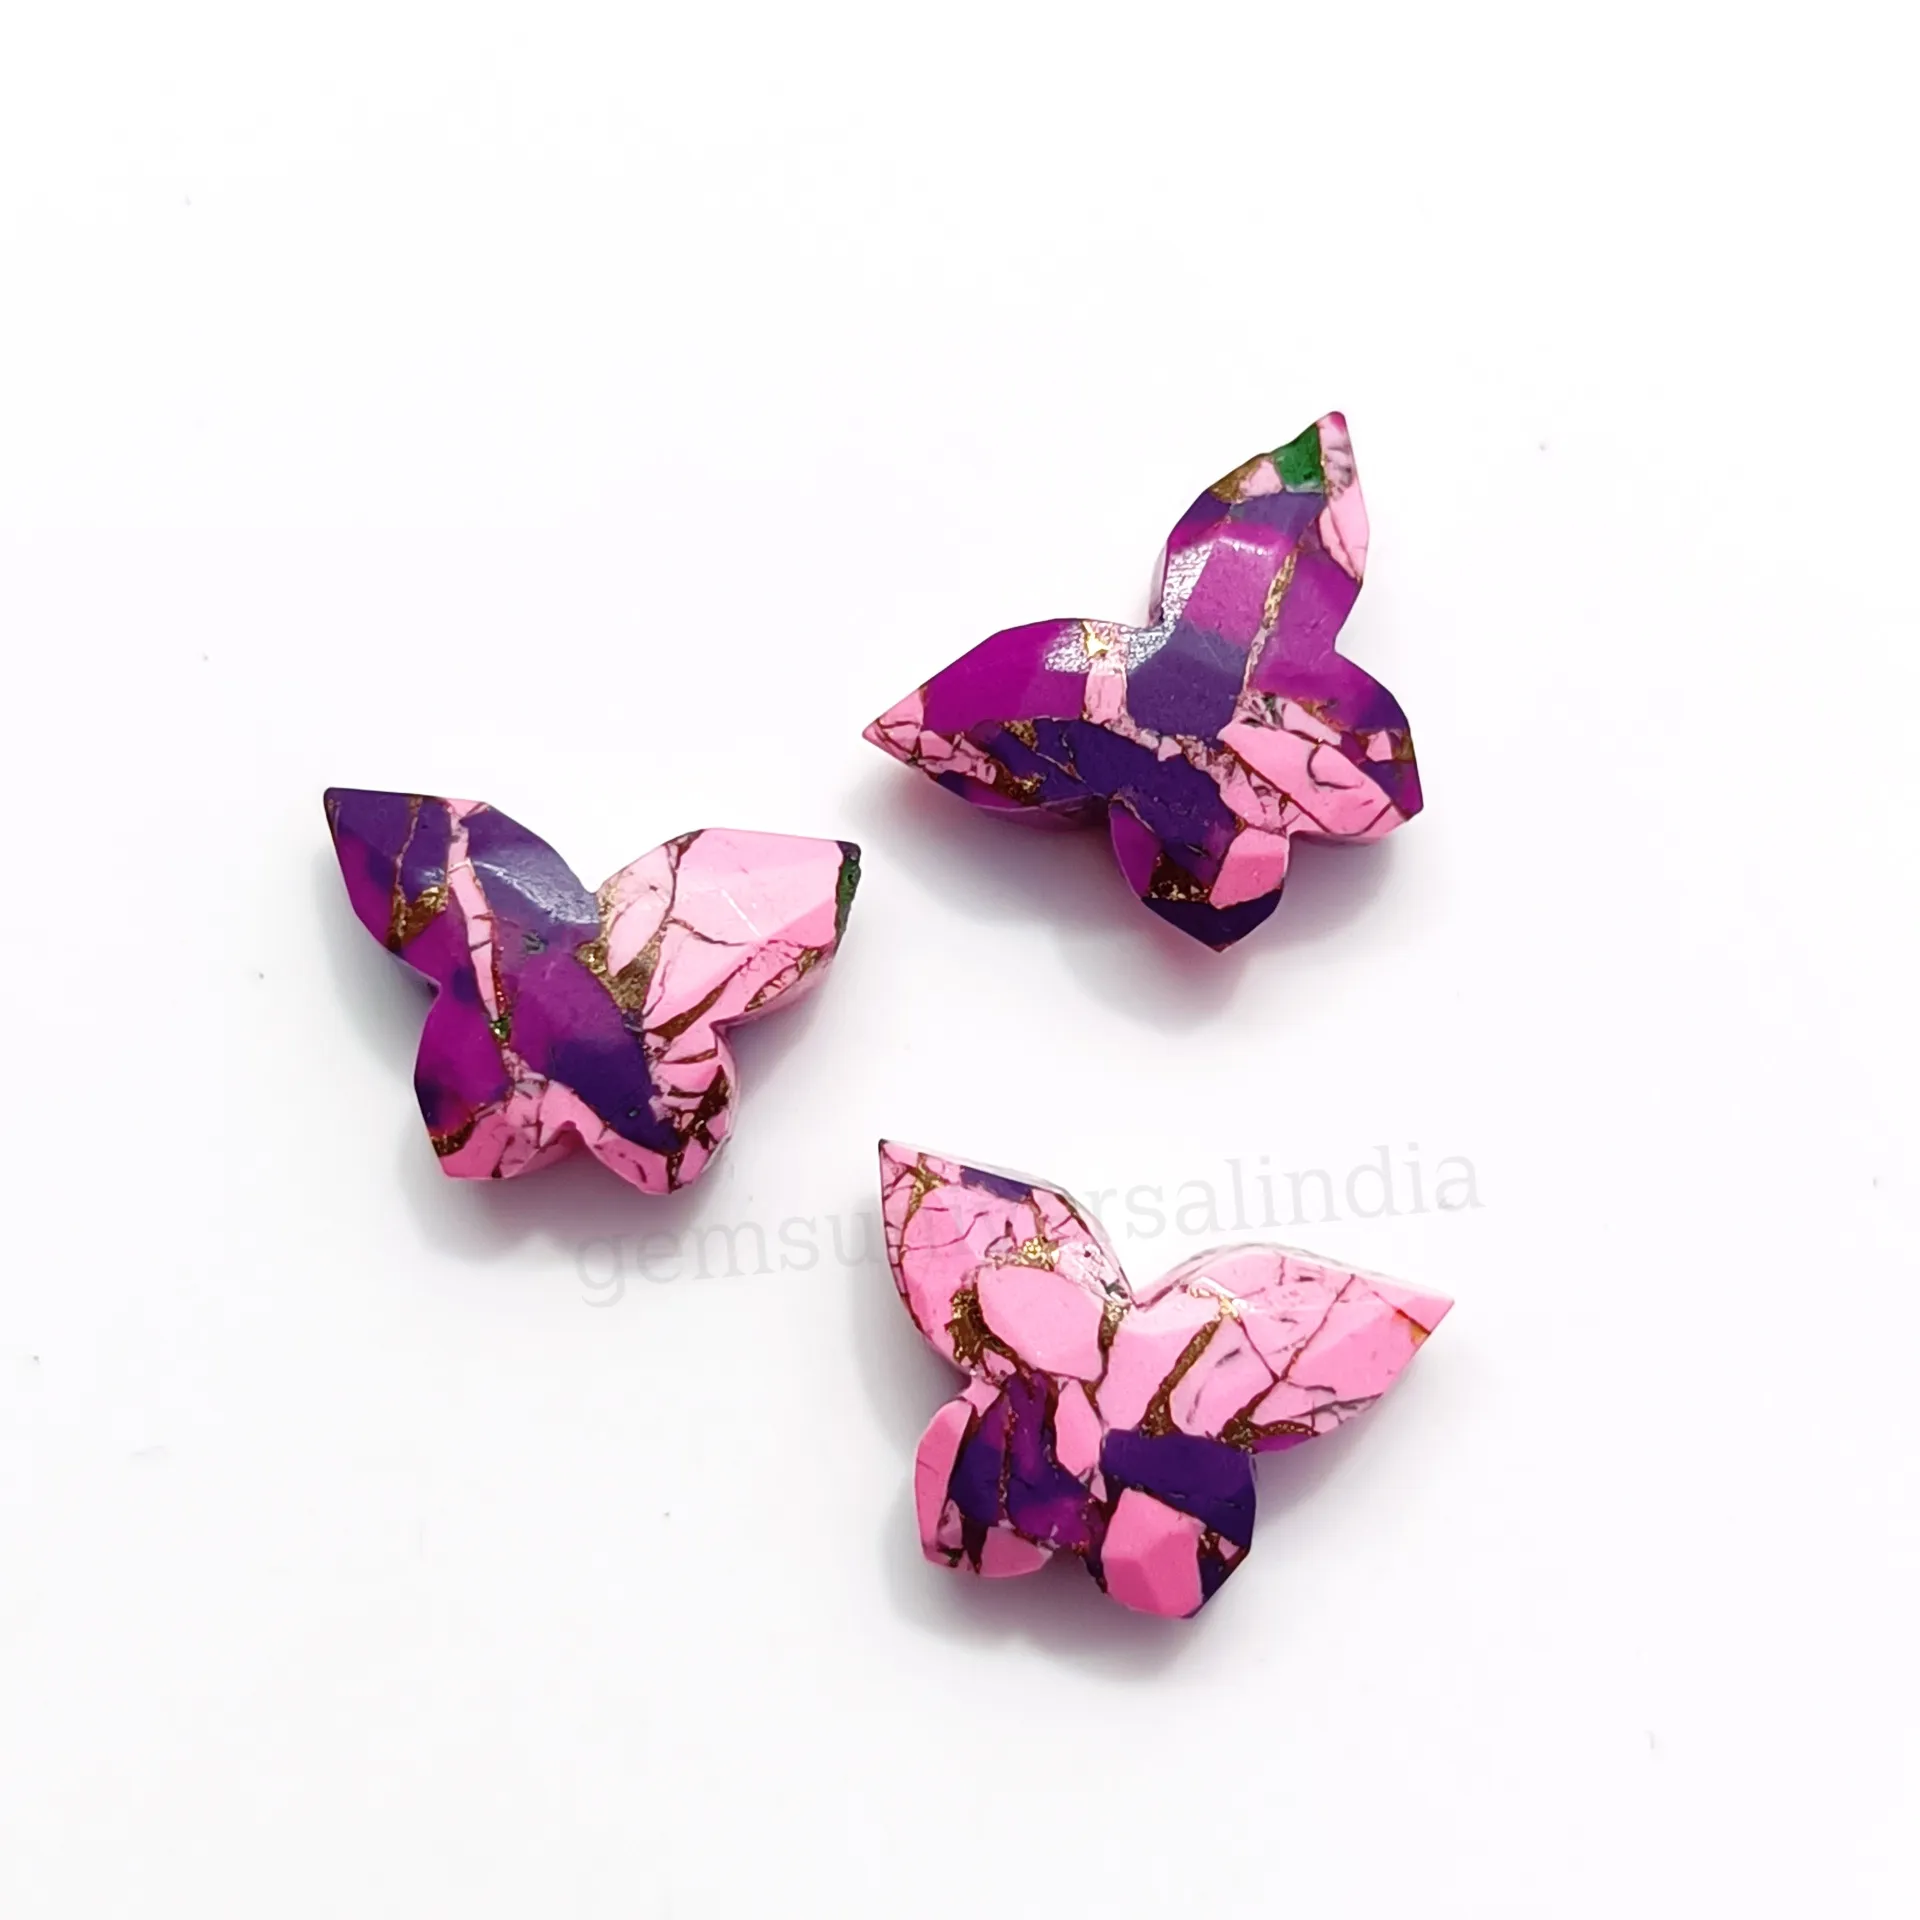 보라색 핑크 모하비 청록색 나비 패싯 원석 구리 청록색 조각 비즈 느슨한 손으로 조각 된 원석 비즈, 10x14mm